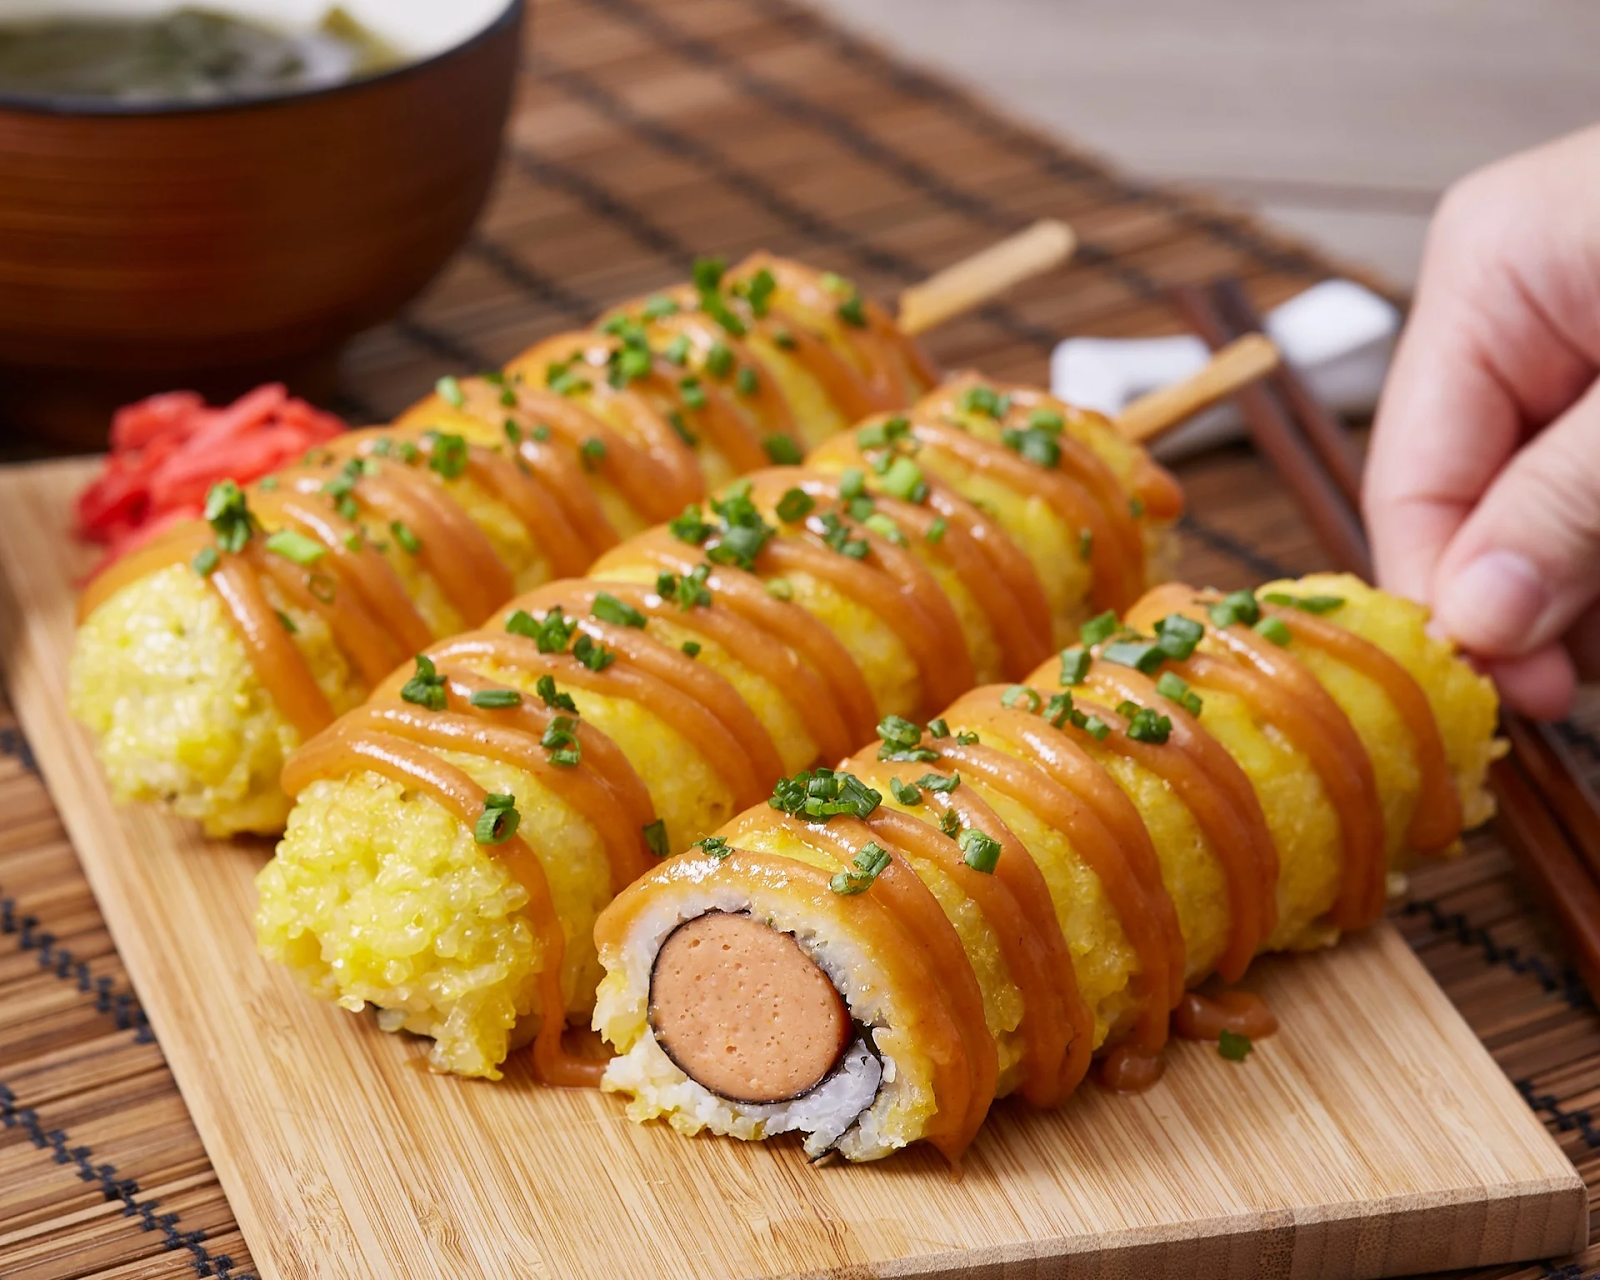 แจกสูตรเด็ด 10 เมนูอาหารญี่ปุ่น พร้อมวิธีทำที่อยู่บ้านก็อร่อยได้ ช่วยเติมความฟินให้กับครอบครัวในทุกวันหยุด EP.25